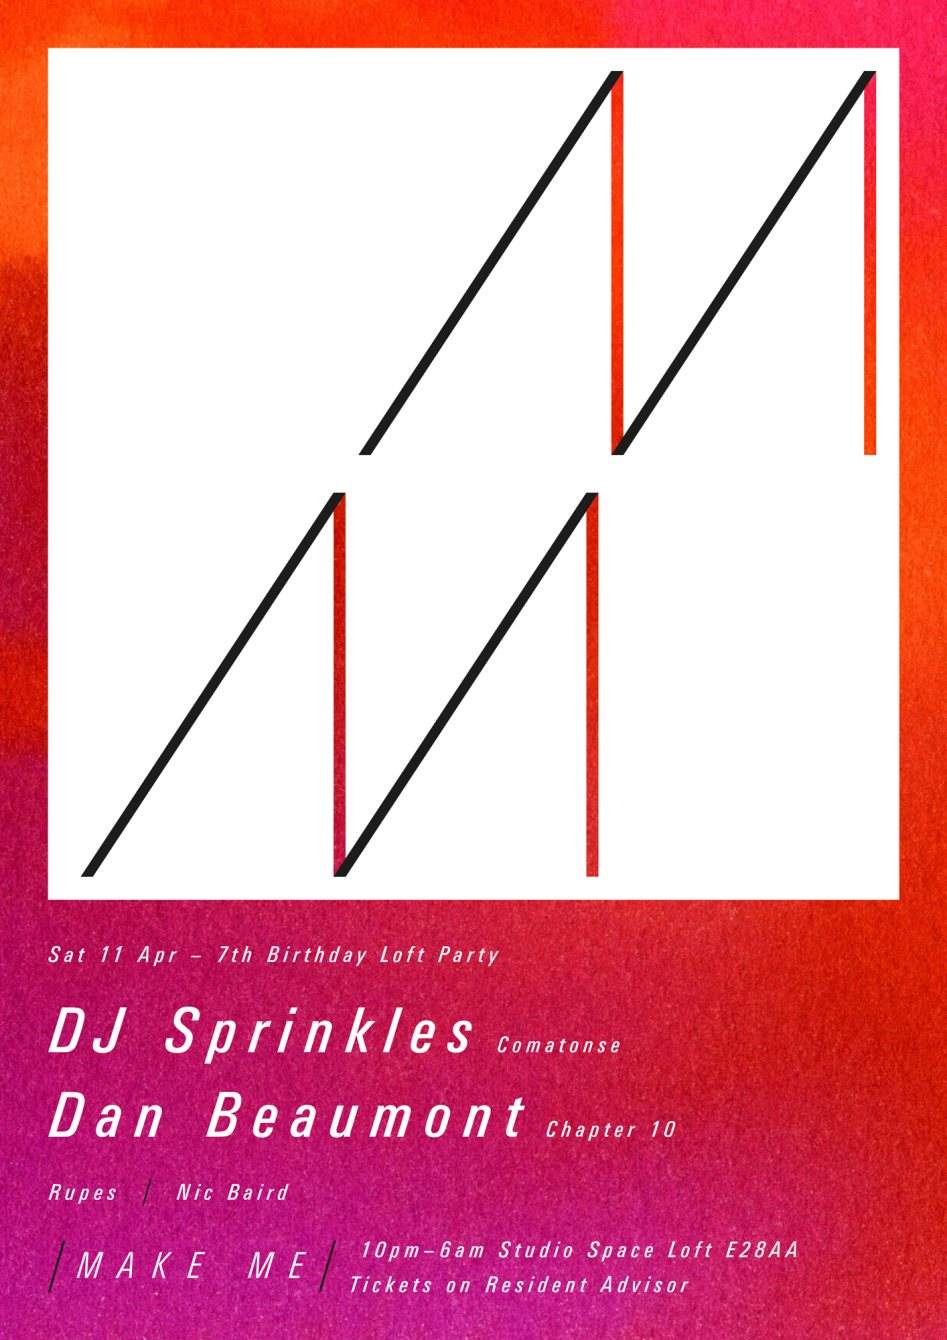 Make Me 7th Birthday Loft Party with DJ Sprinkles - Página frontal